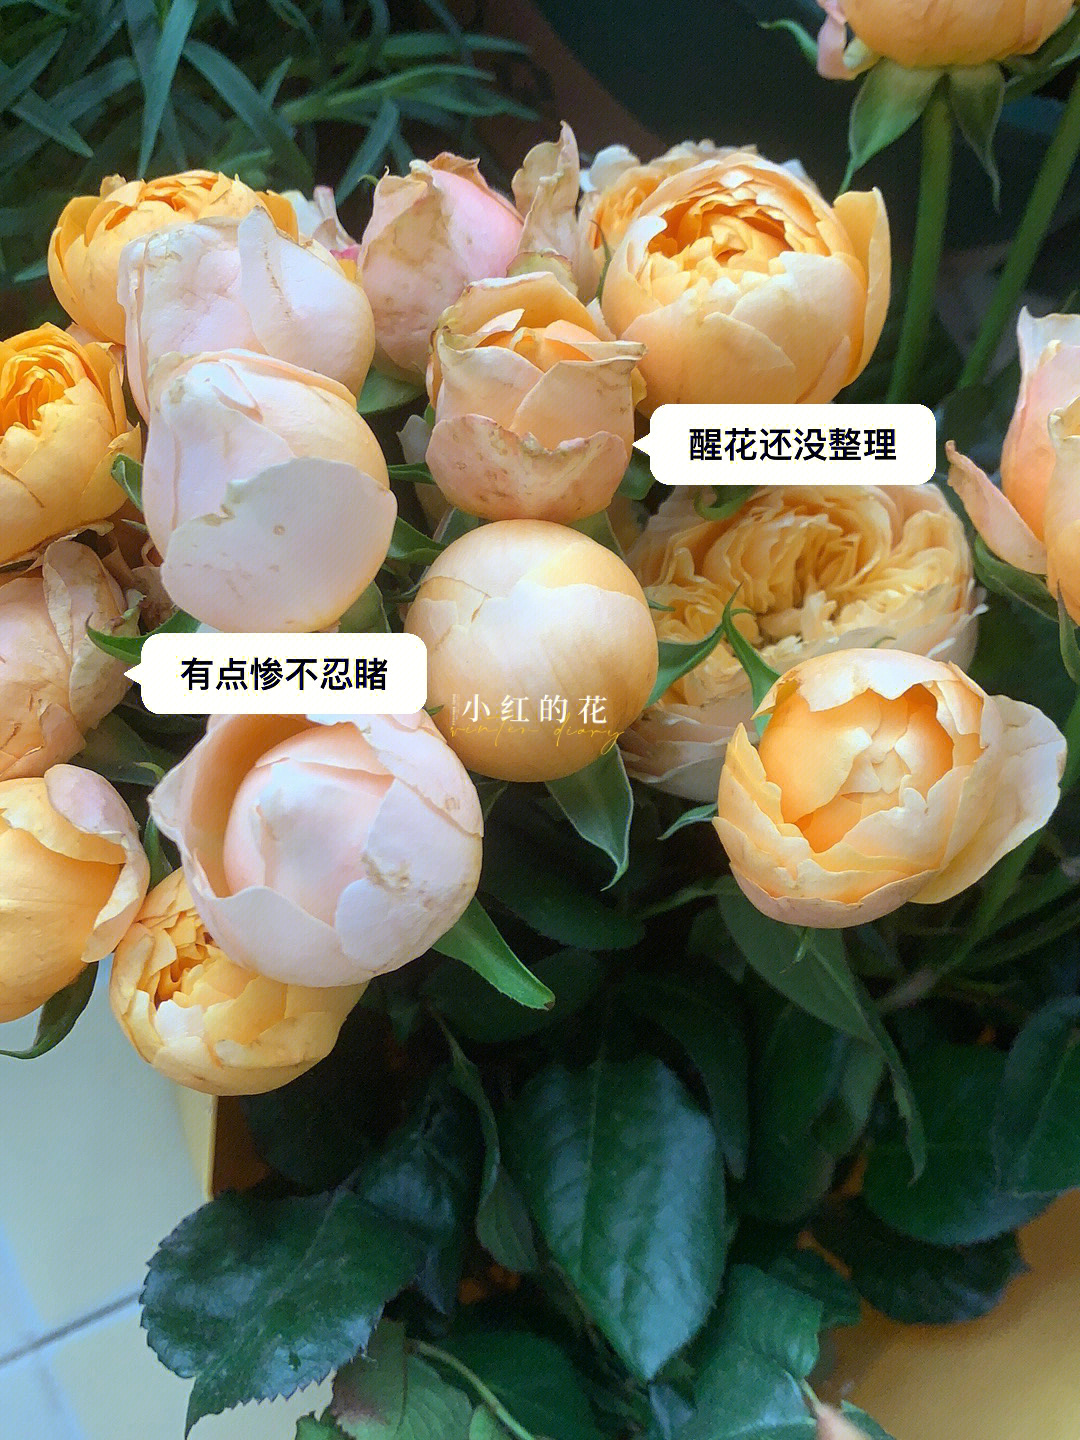 多头黄蝴蝶玫瑰花语图片